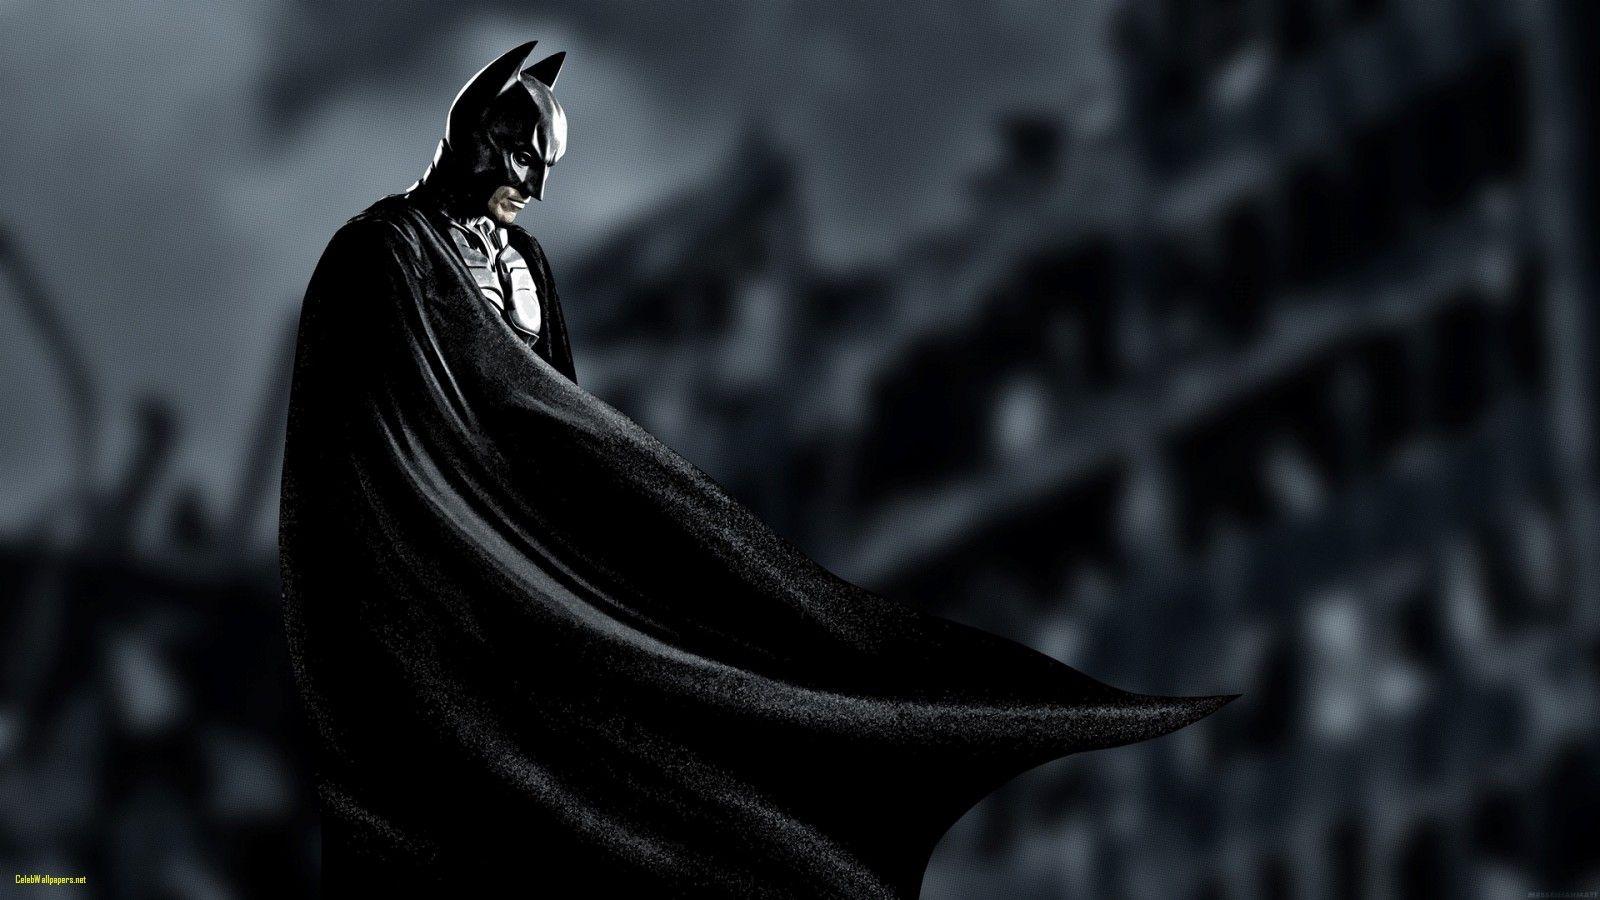 Batman HD Wallpaper Batman Wallpaper Free Download